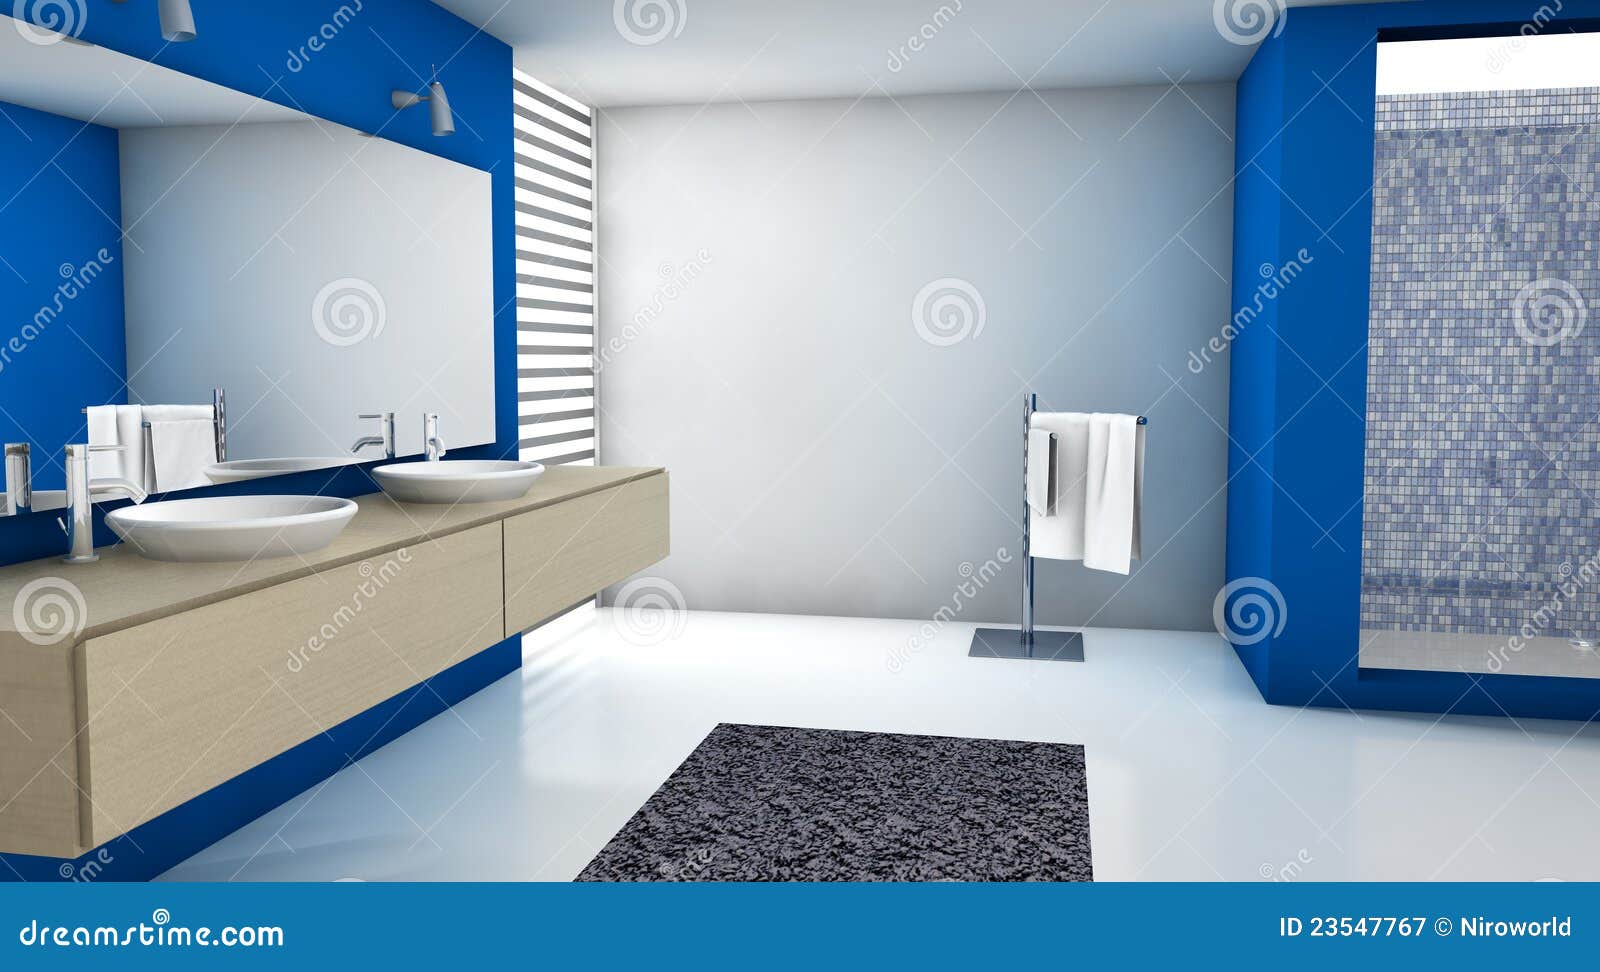 Badezimmer-Blau stockbild. Bild von haupt, vorrichtung - 23547767